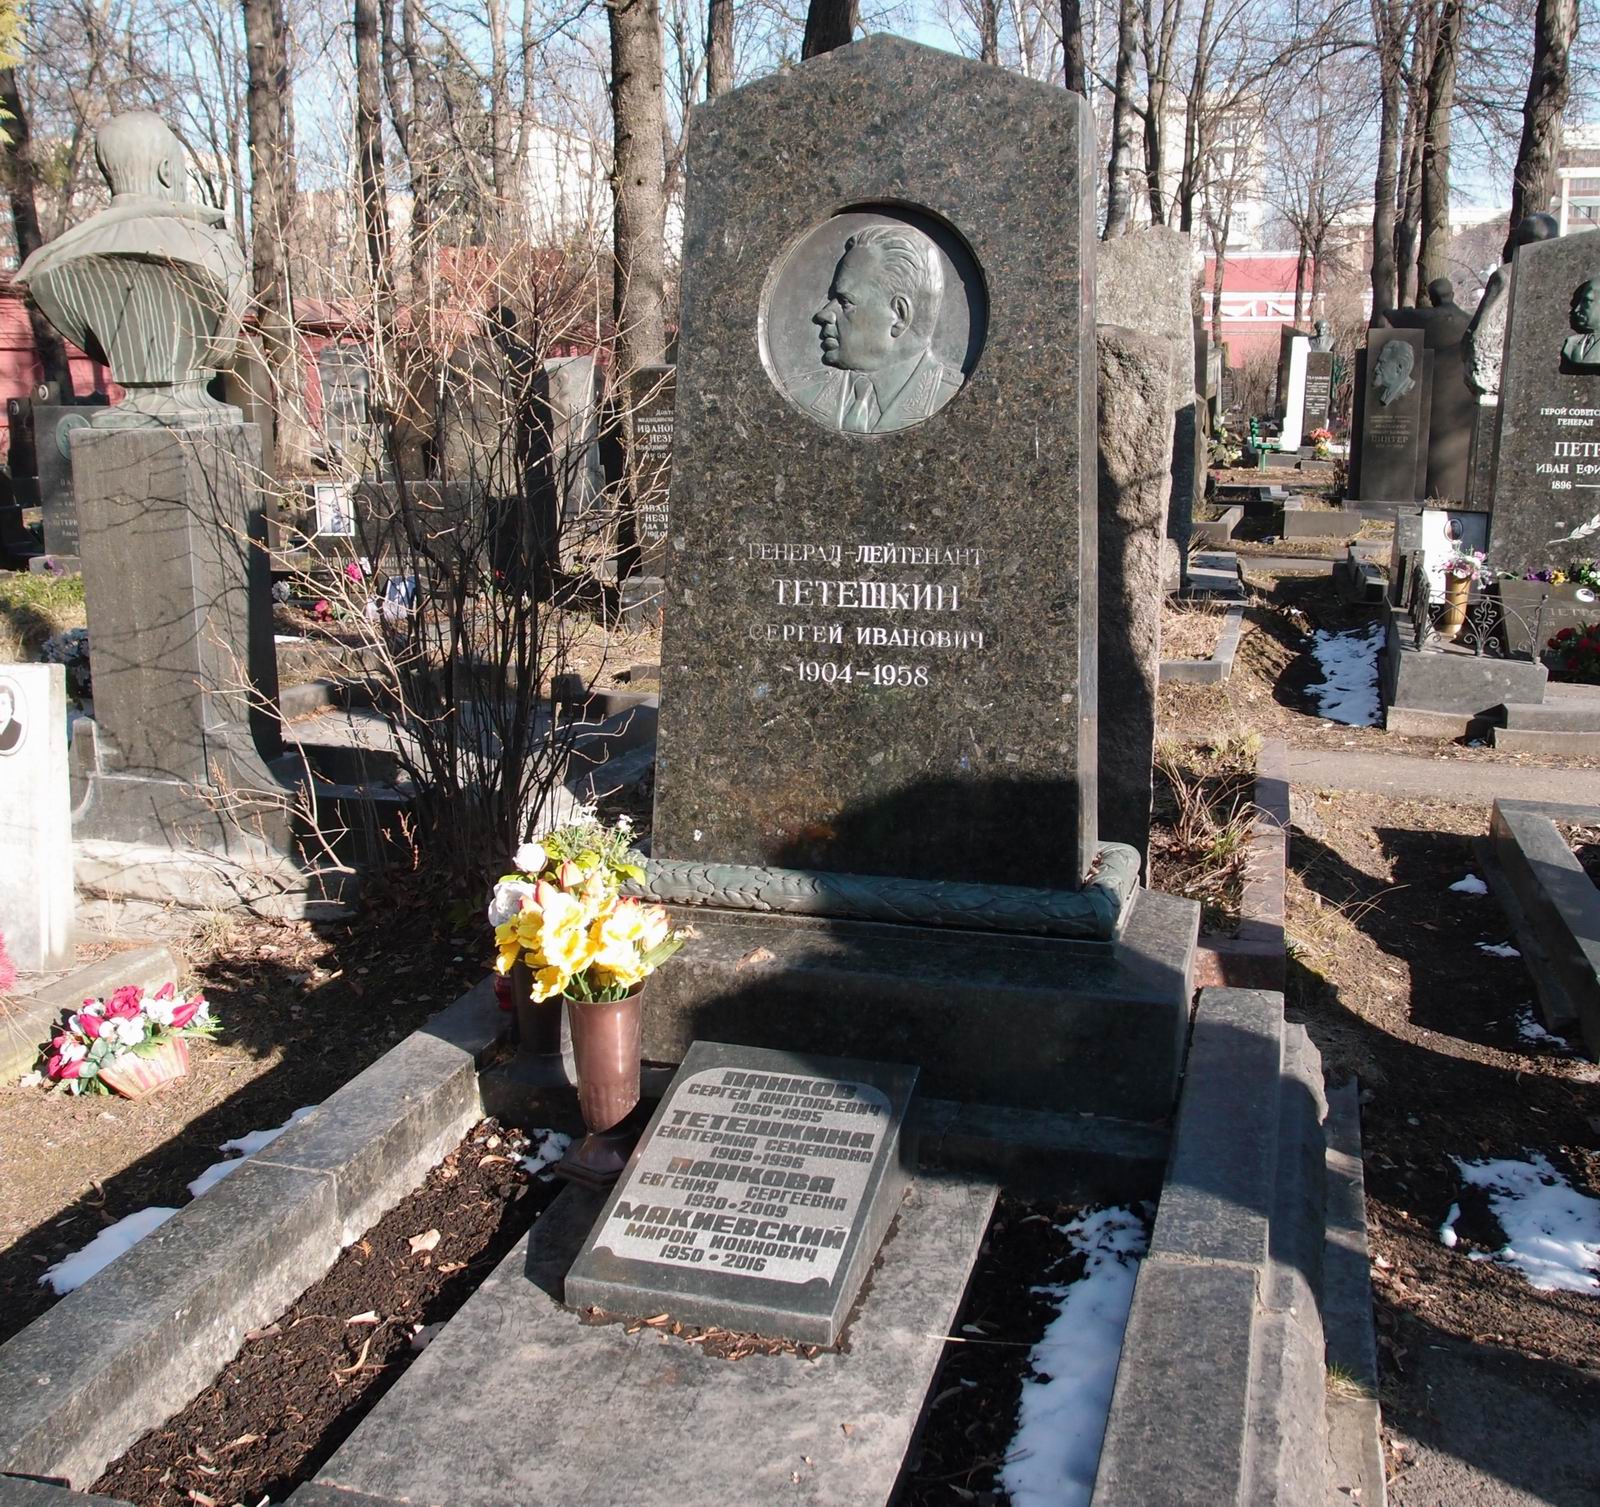 Памятник на могиле Тетешкина С.И. (1904-1958), ск. В.М.Кураев, арх. Л.Шатилова, на Новодевичьем кладбище (5-22-7).